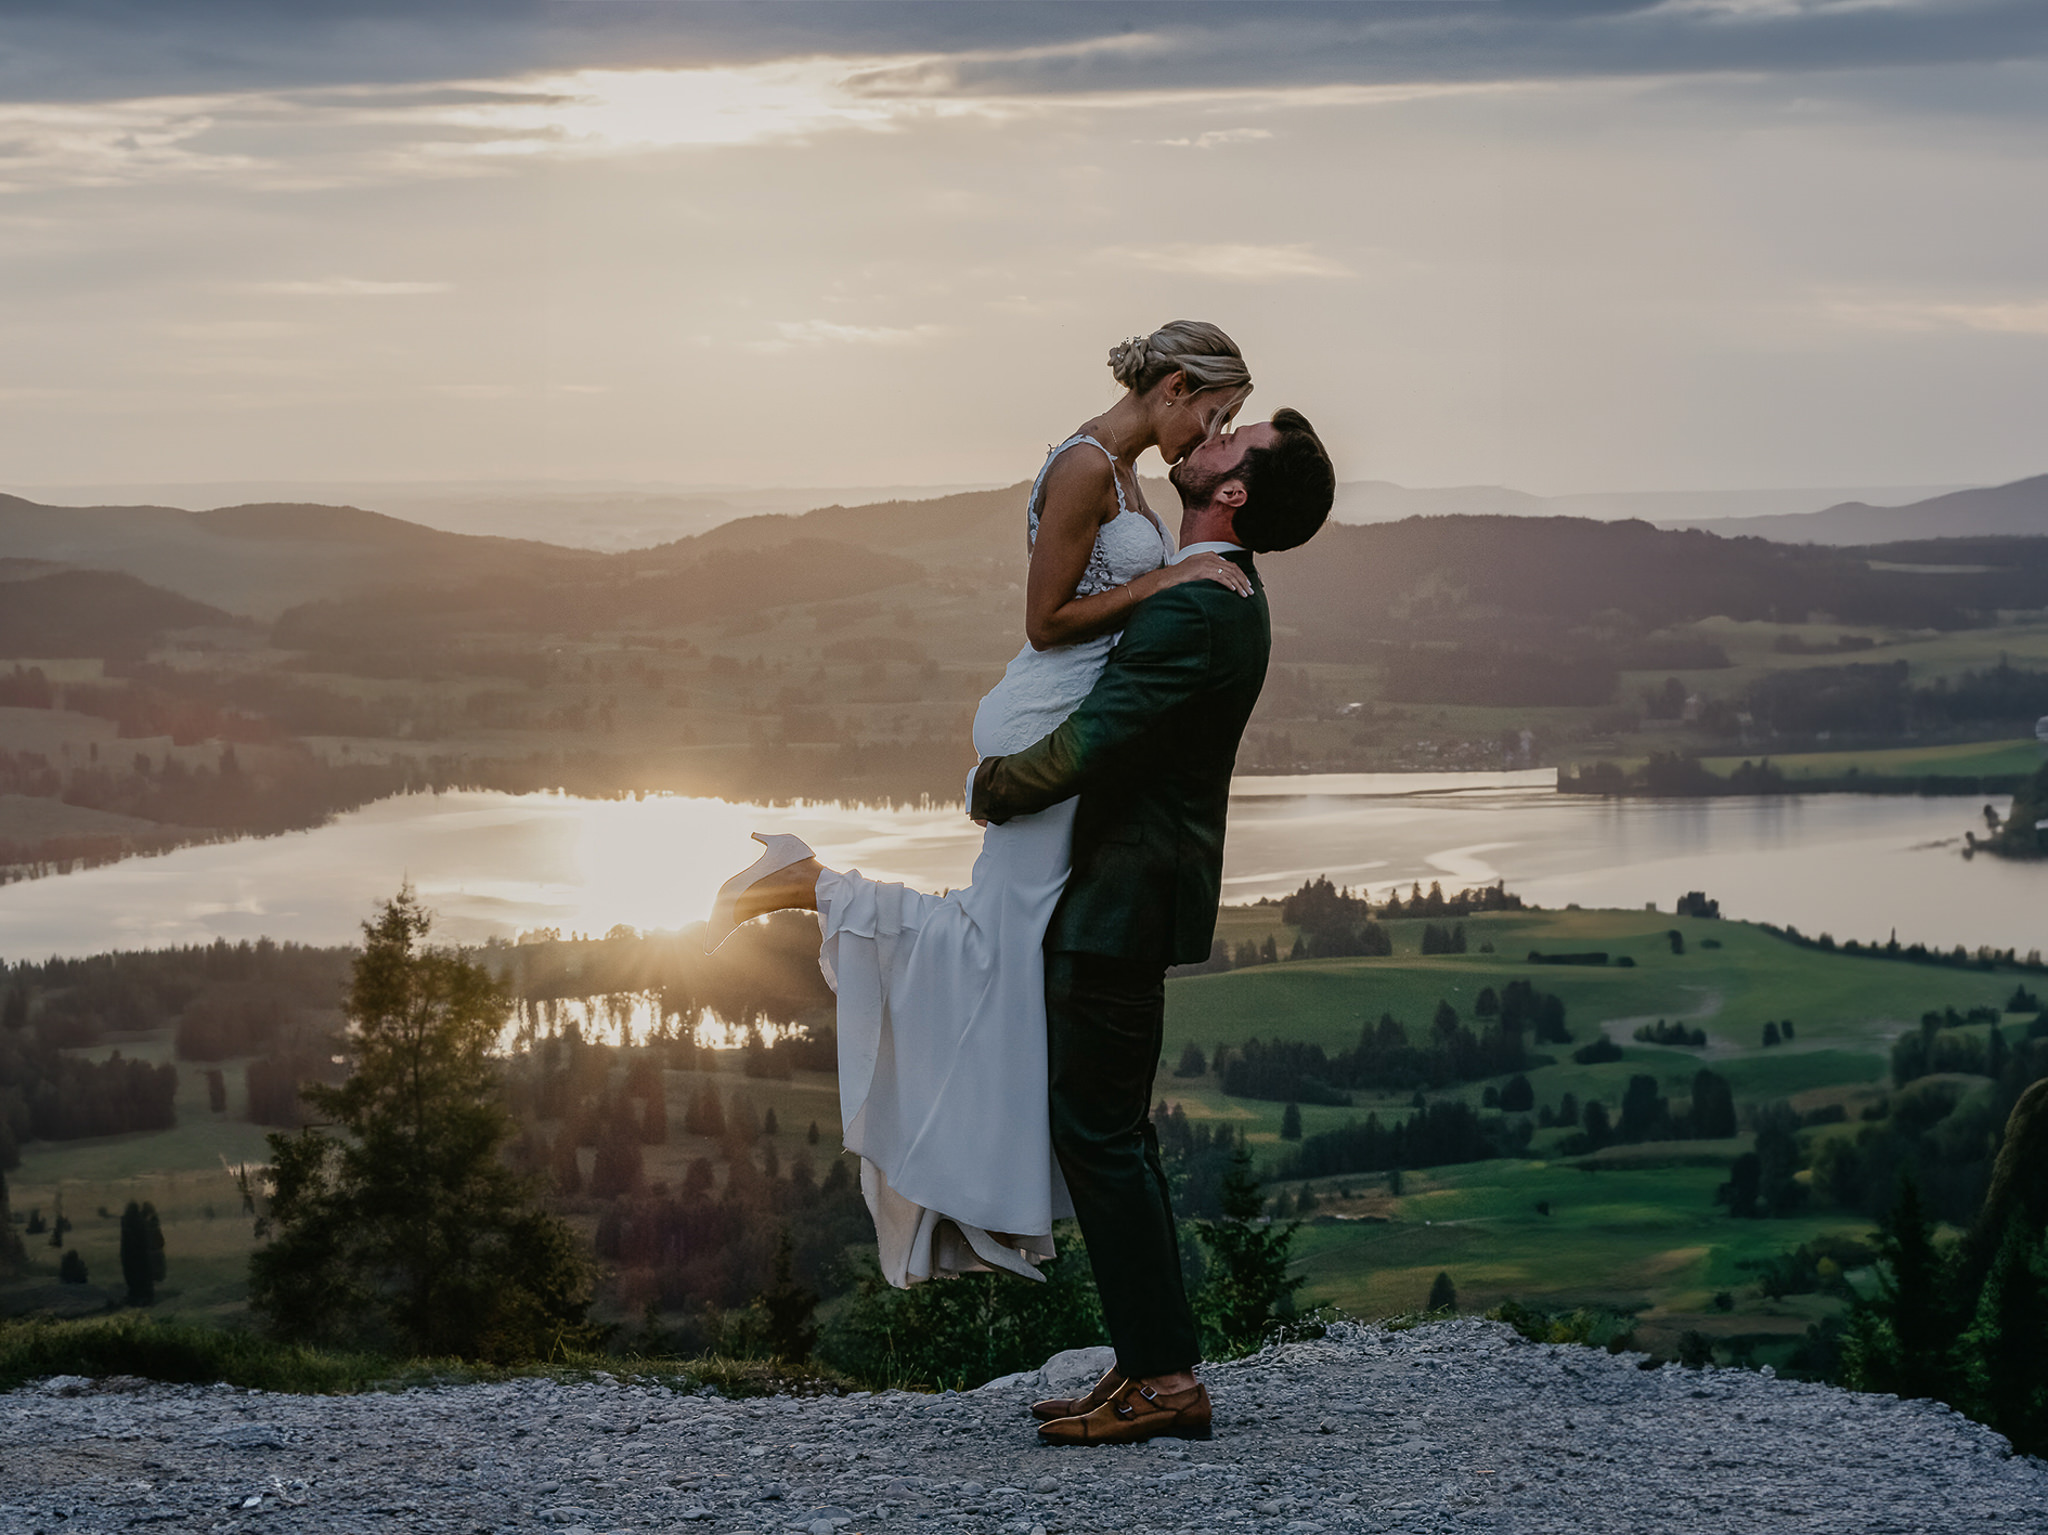 Vor dem Sonnenuntergang der alpinen Landschaft hebt der Bräutigam seine Braut für einen Kuss hoch.